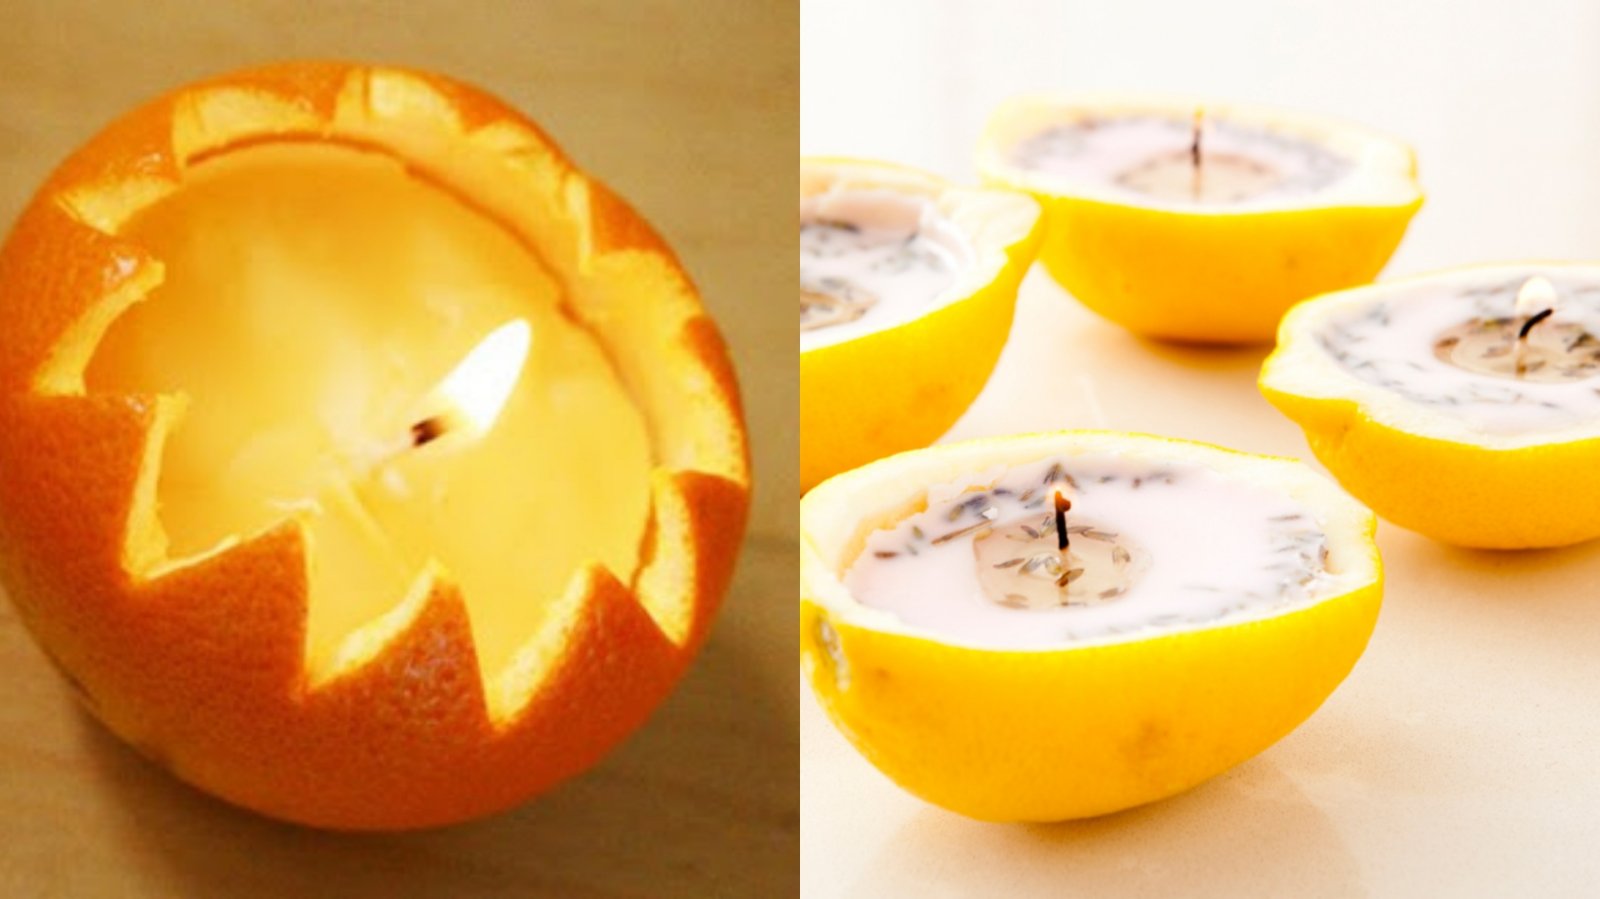 Dùng vỏ cam, vỏ chanh làm đế để tạo ra nến thơm hương cam, chanh tự nhiên